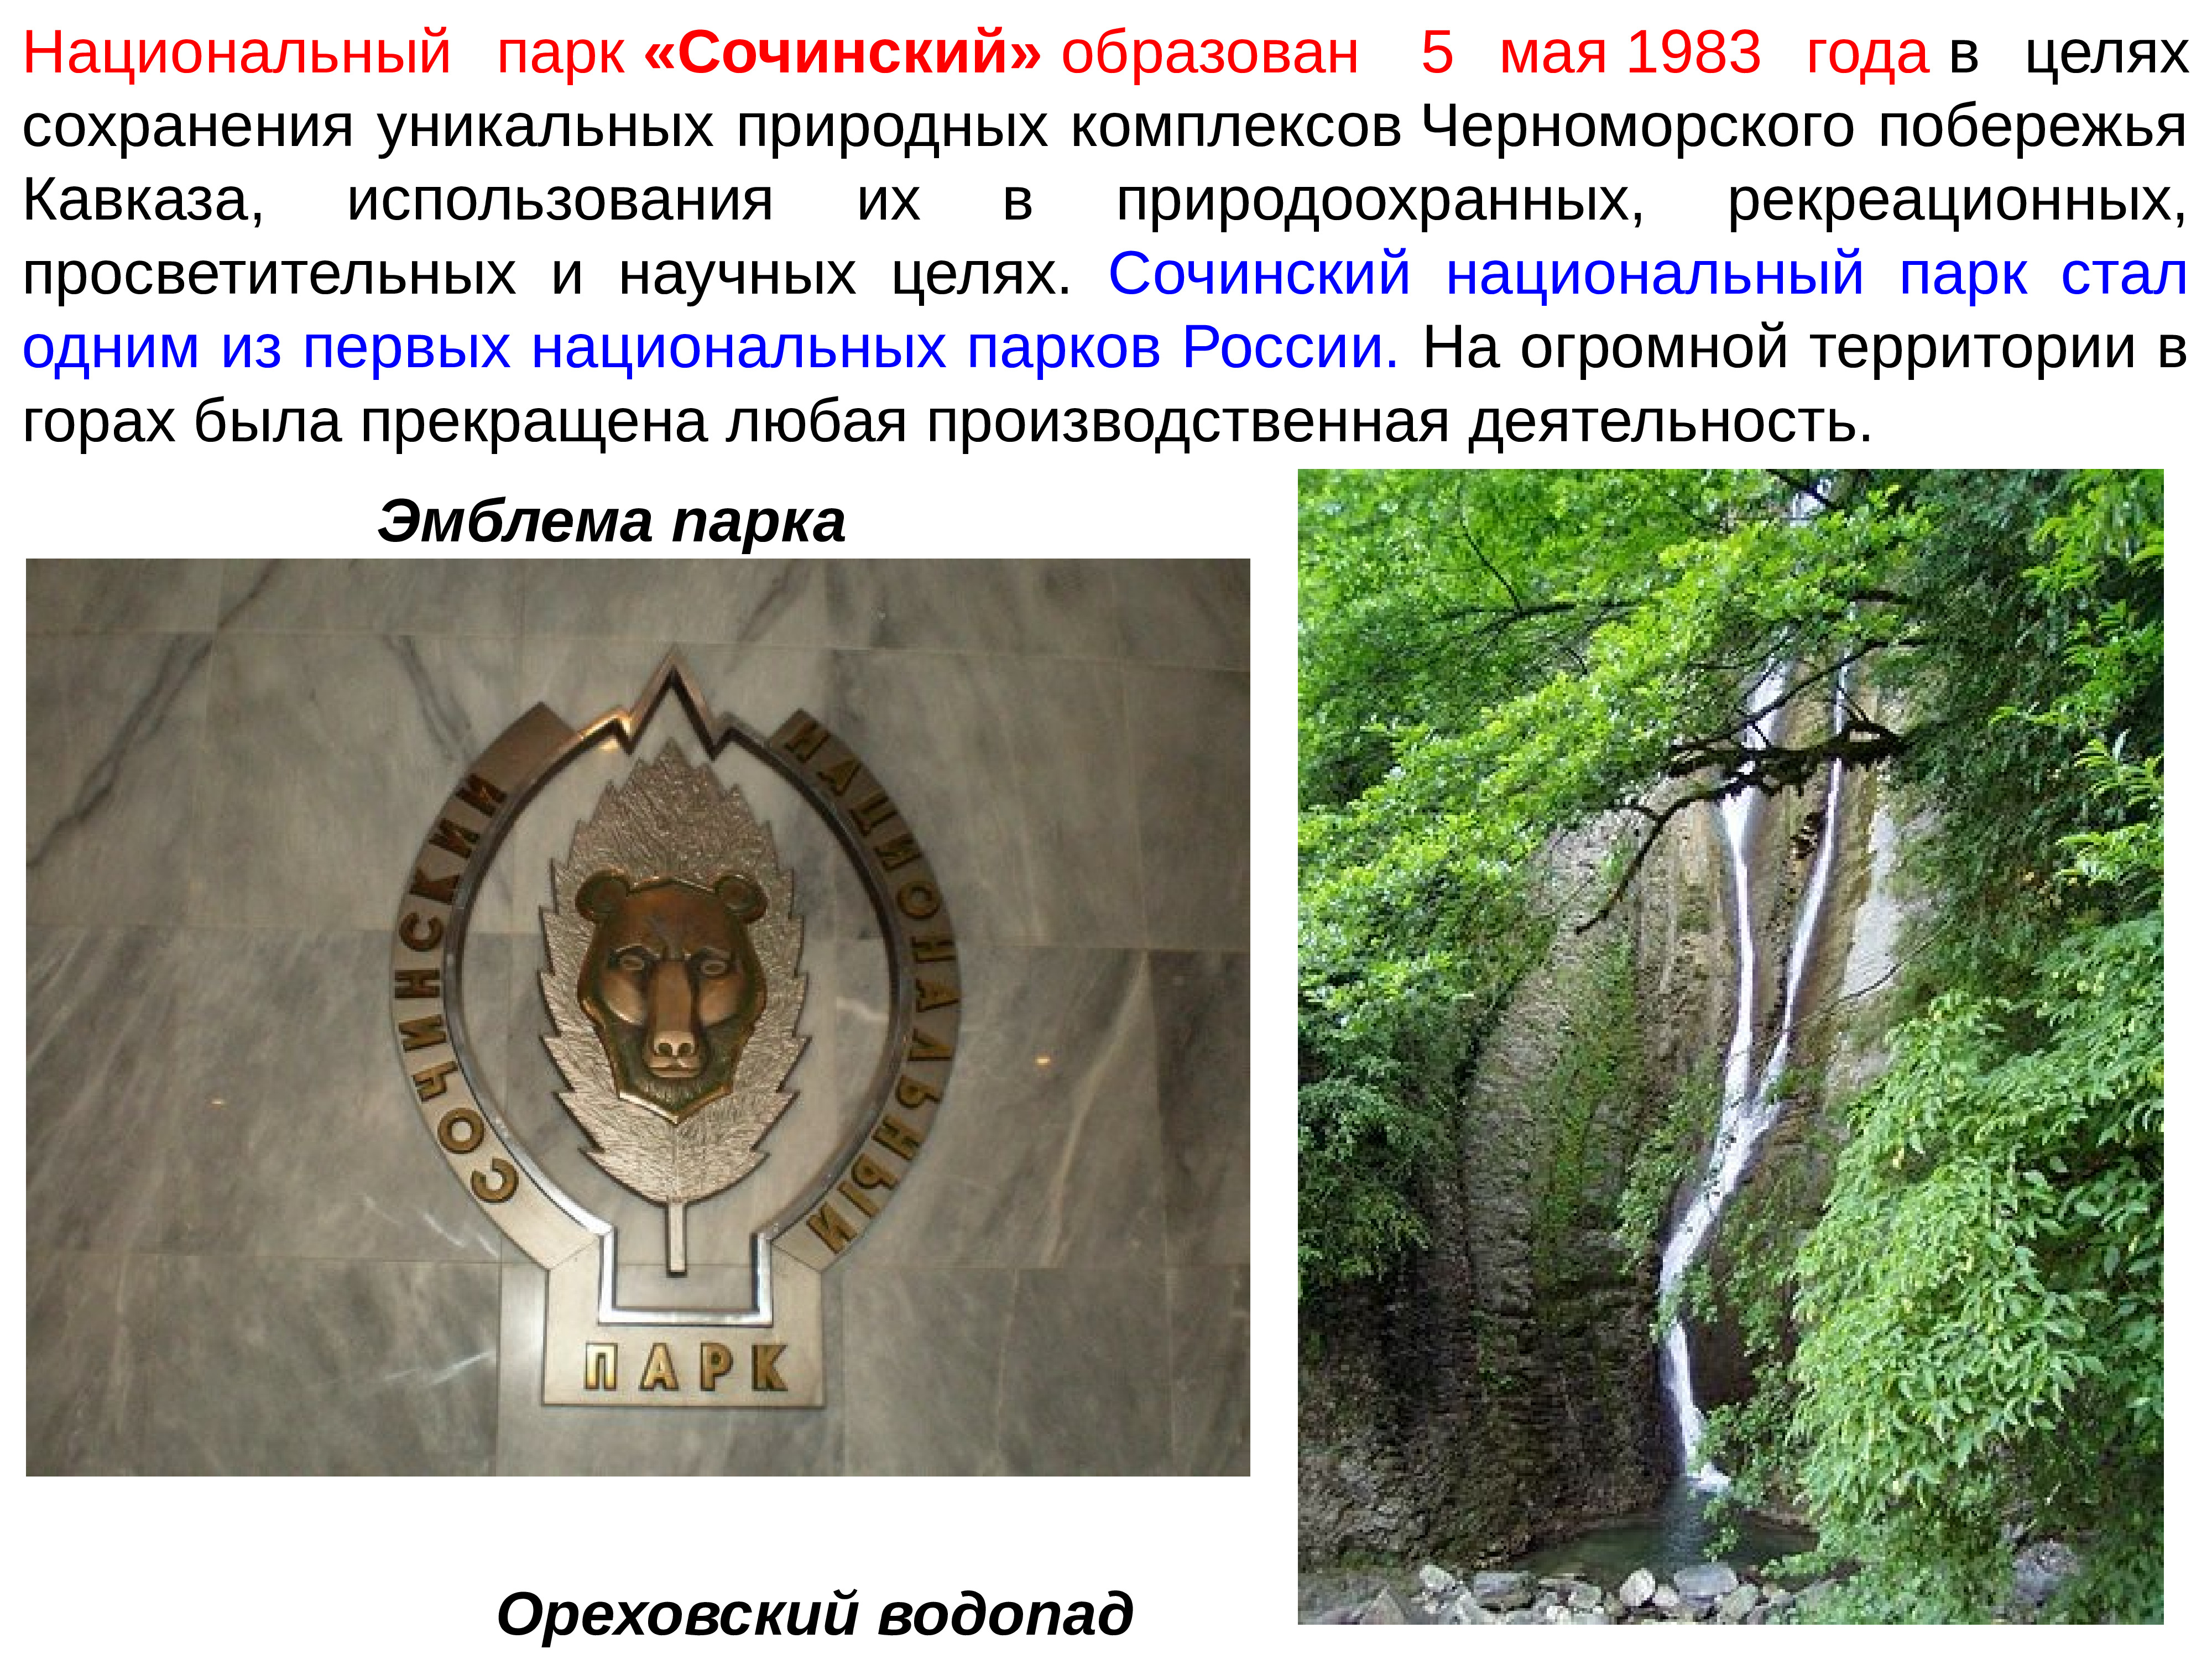 Национальный парк Сочинский Черноморского побережья